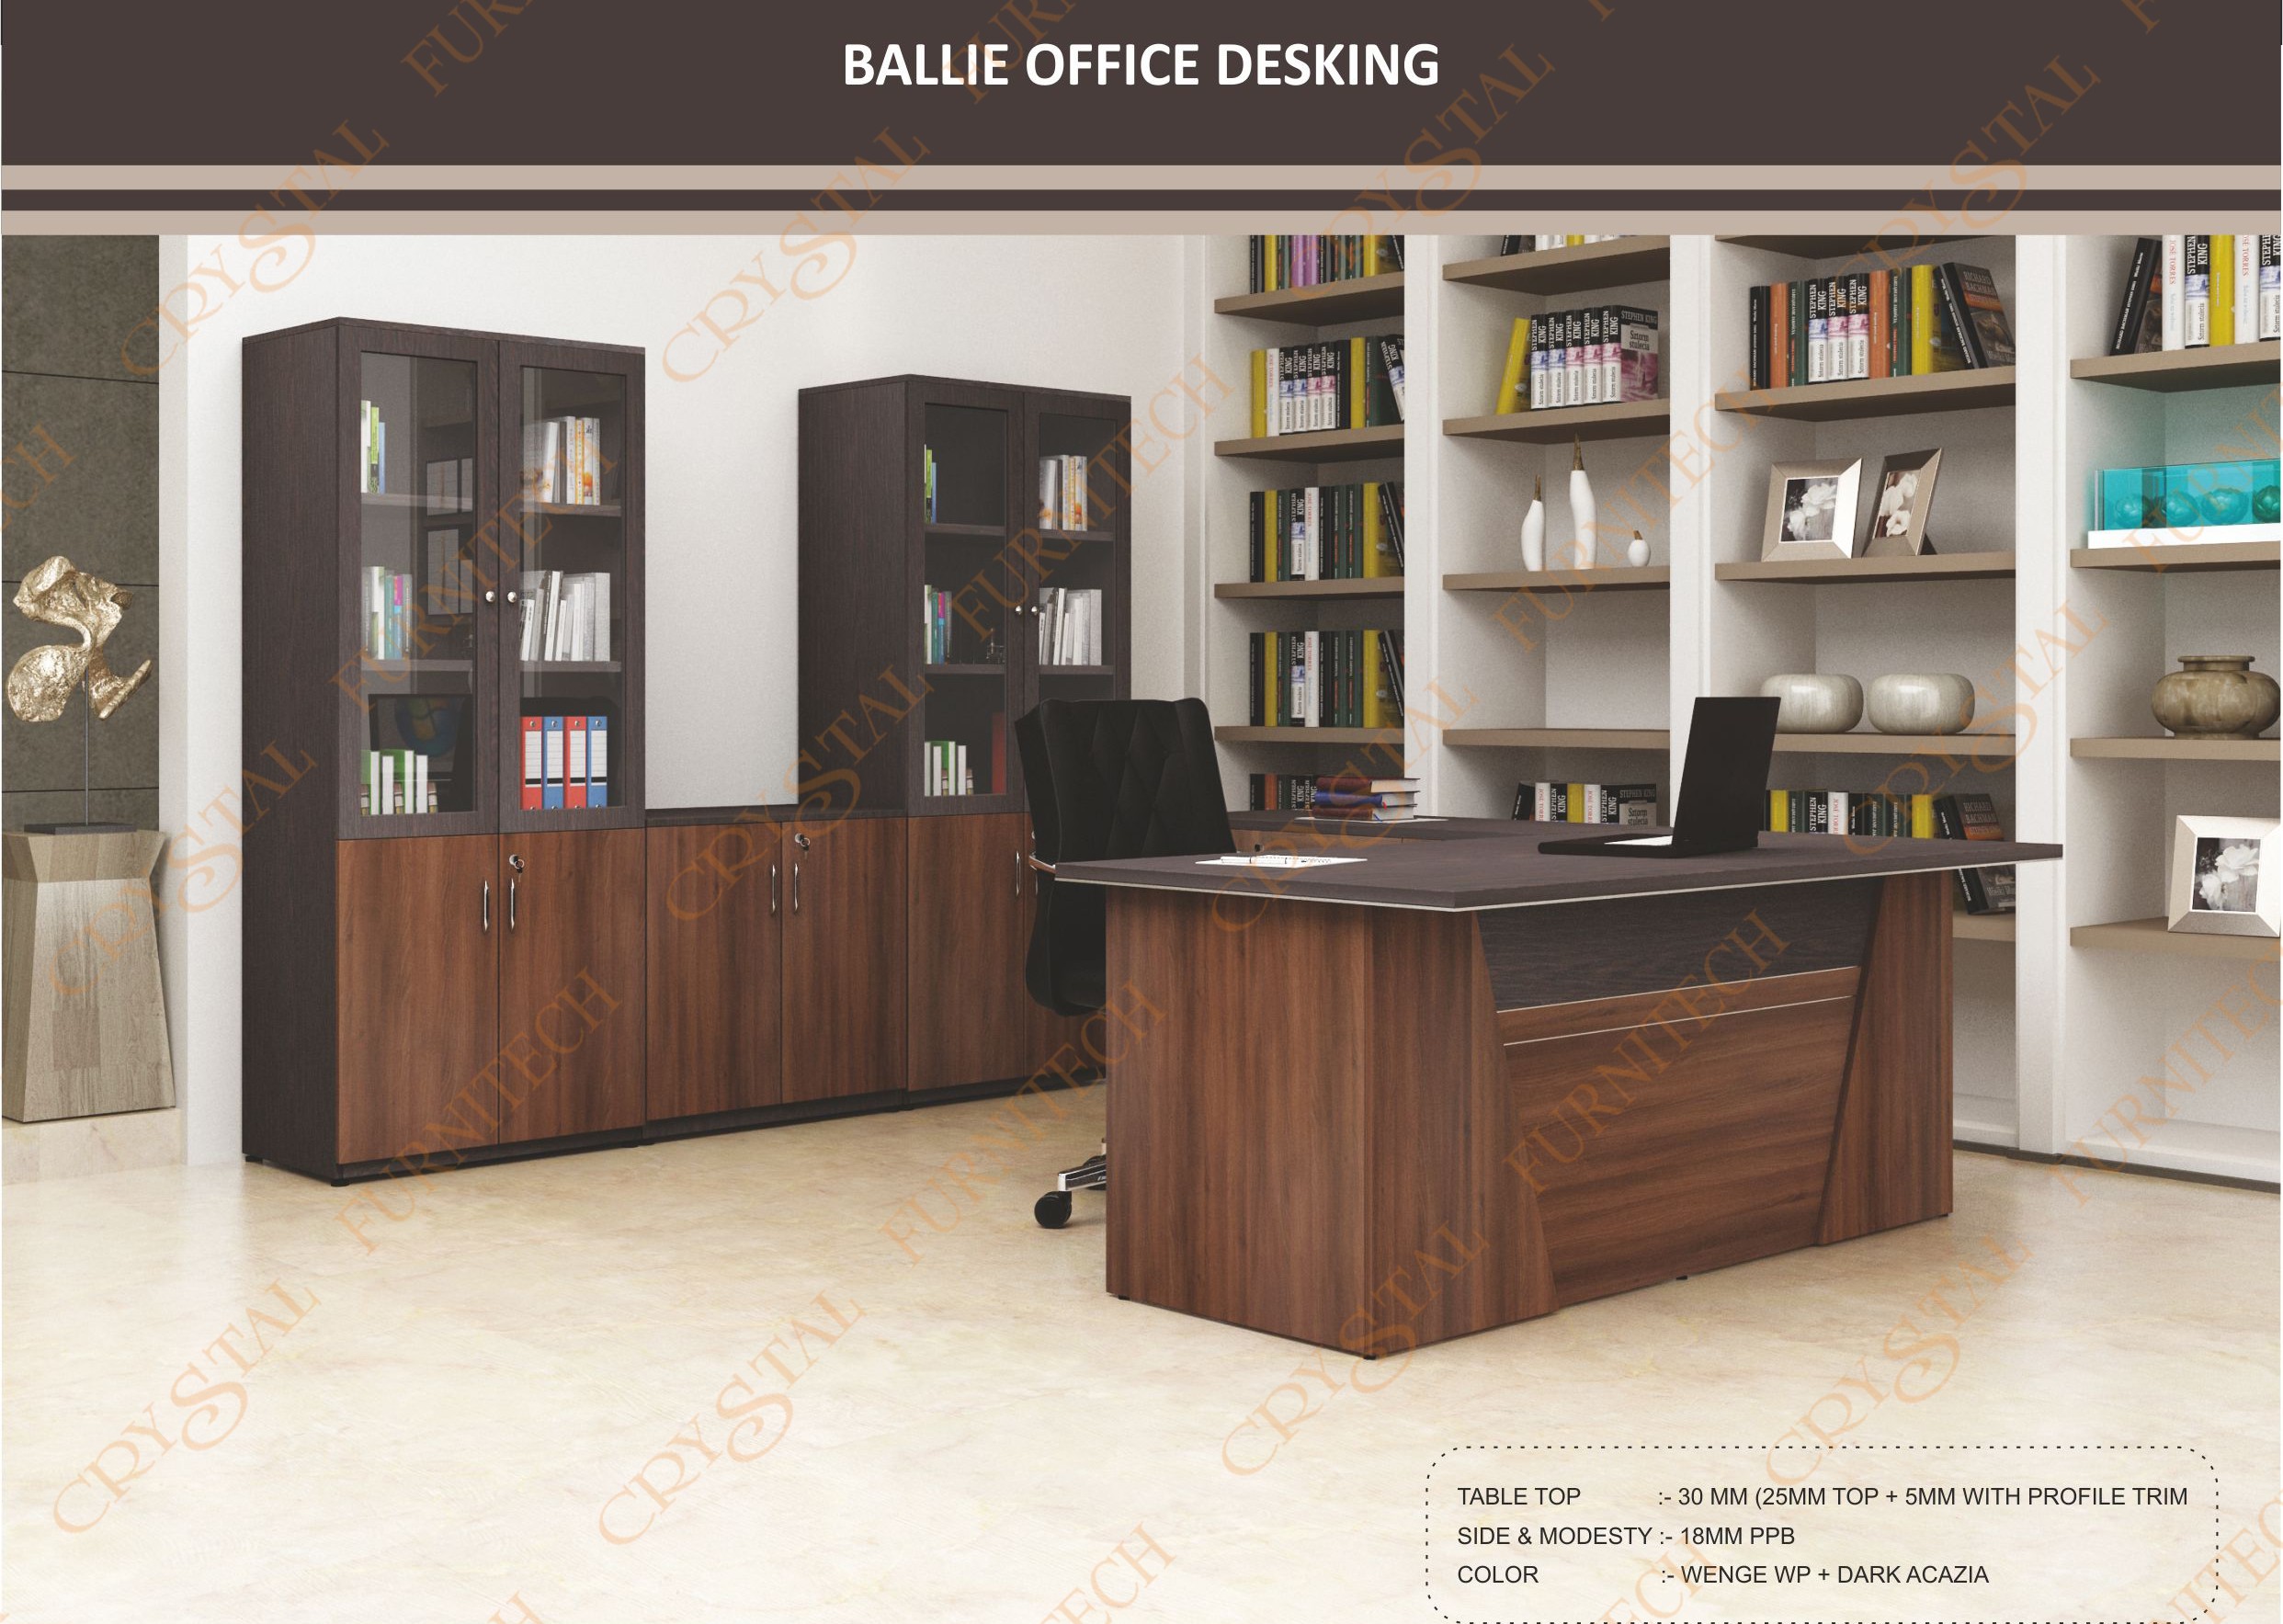 Ballie Office Desking